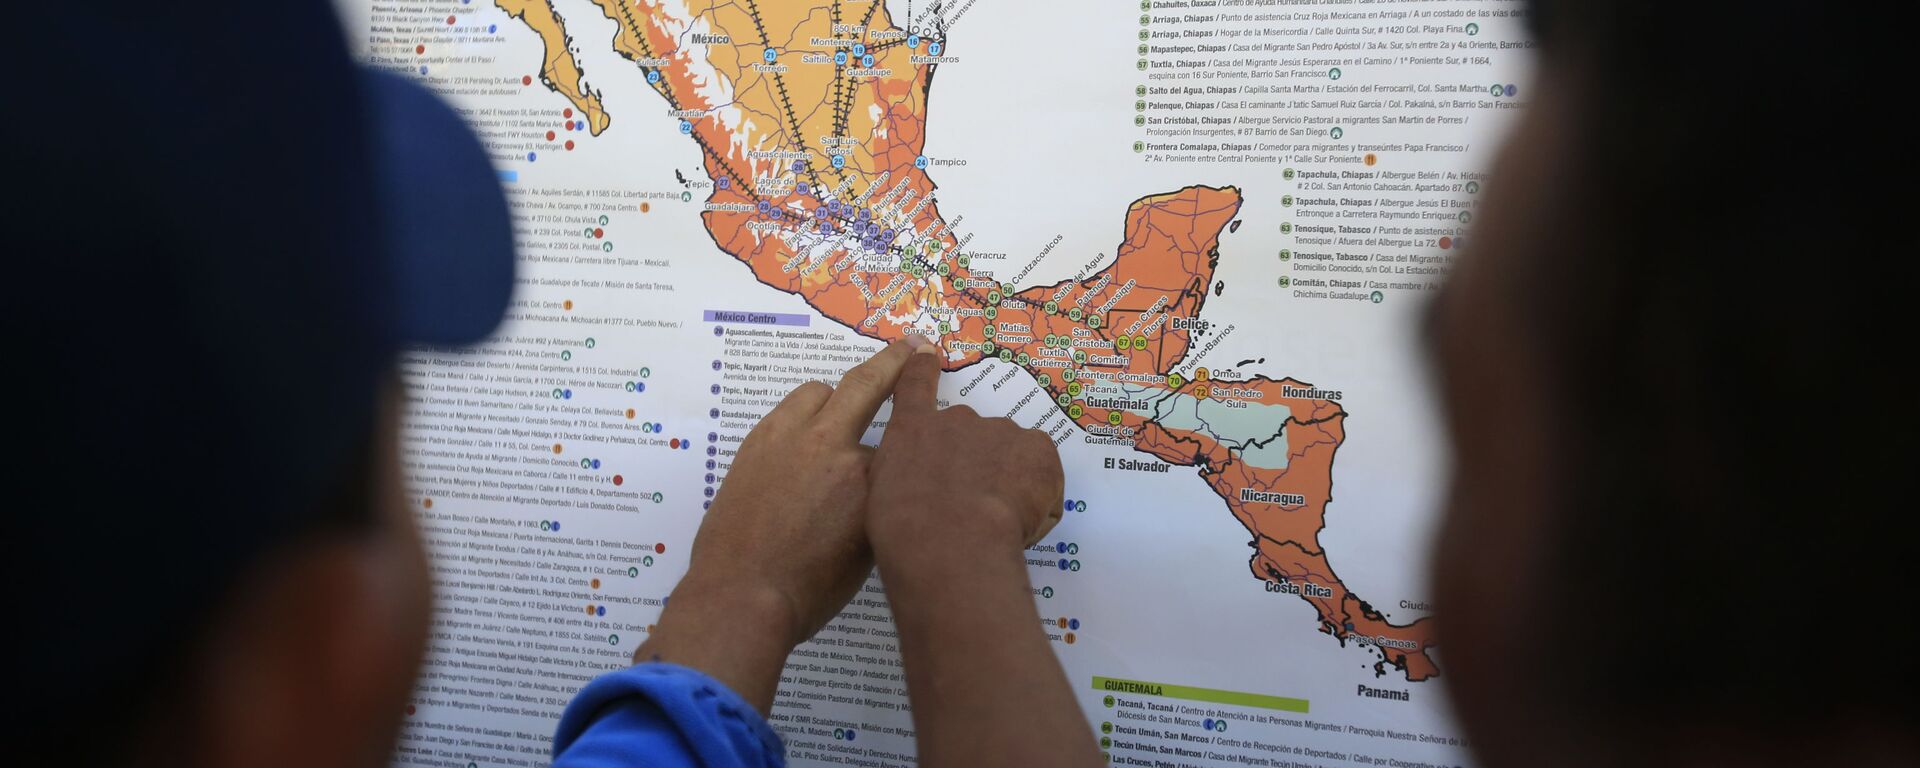 Migrantes centroamericanos planean su recorrido con un mapa en Ciudad de México - Sputnik Mundo, 1920, 22.09.2021